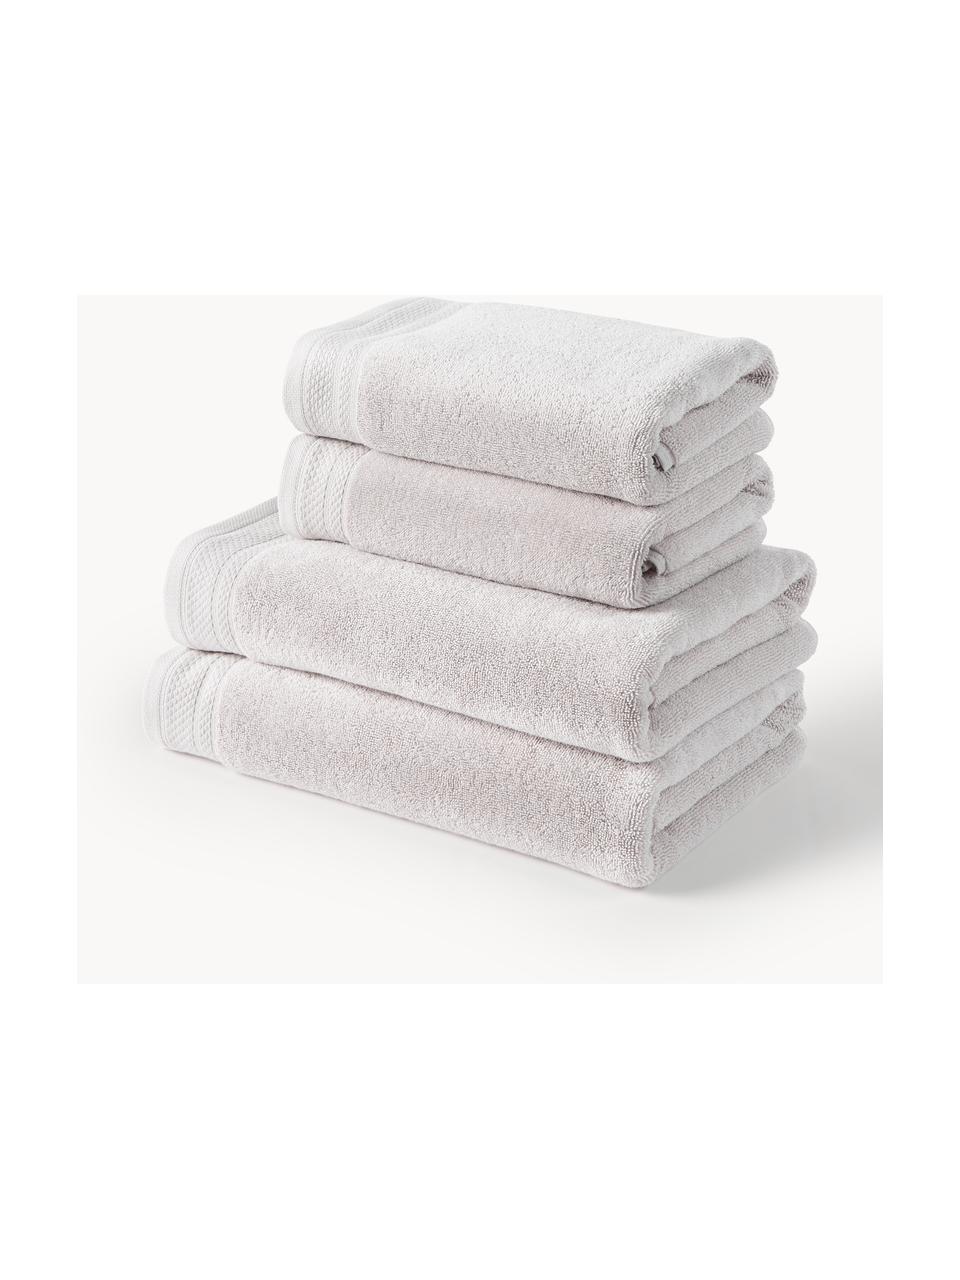 Lot de serviettes de bain en coton bio Premium, tailles variées, Gris clair, 3 éléments (1 serviette invité, 1 serviette de toilette et 1 drap de bain)